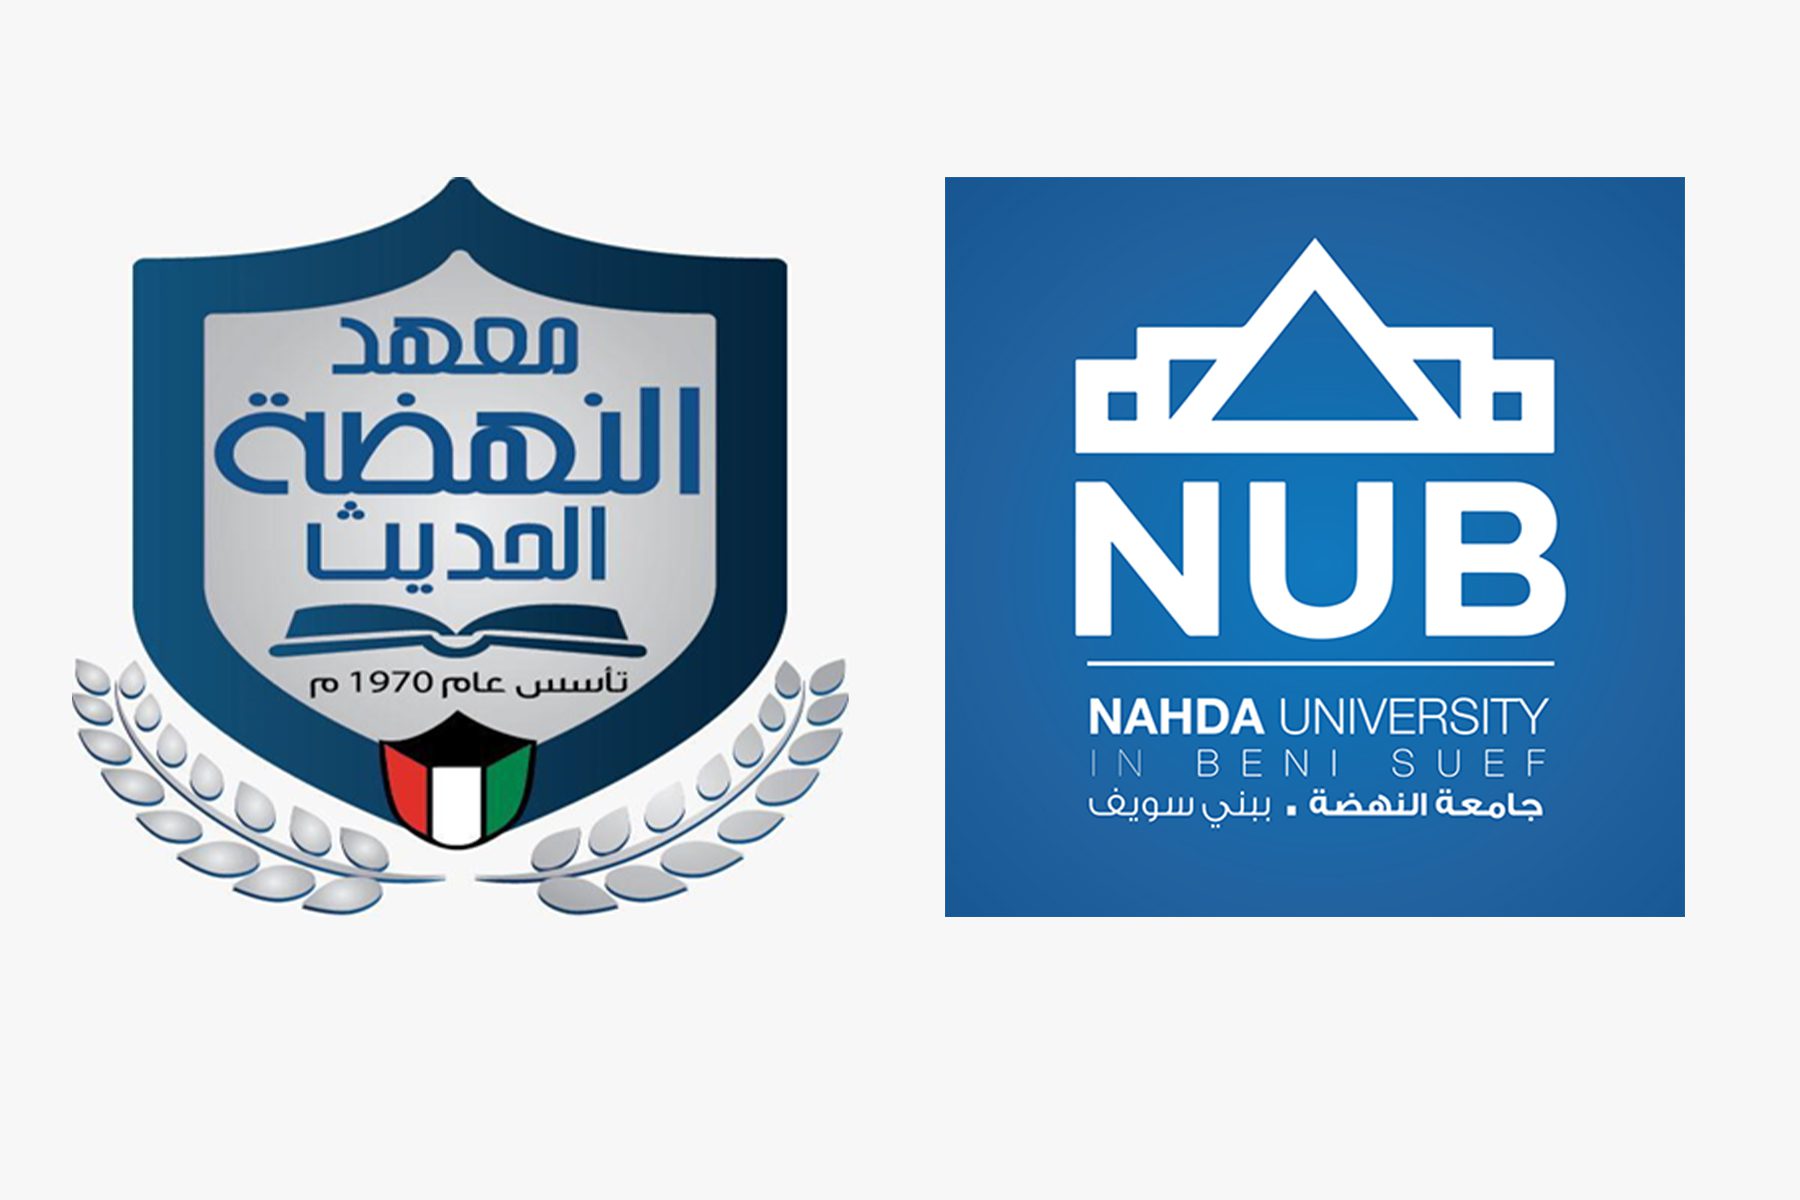 جامعة النهضة تشارك في ملتقى الطلاب المنعقد في دولة الكويت خلال الفترة من 12 إلى 16 مارس 2022